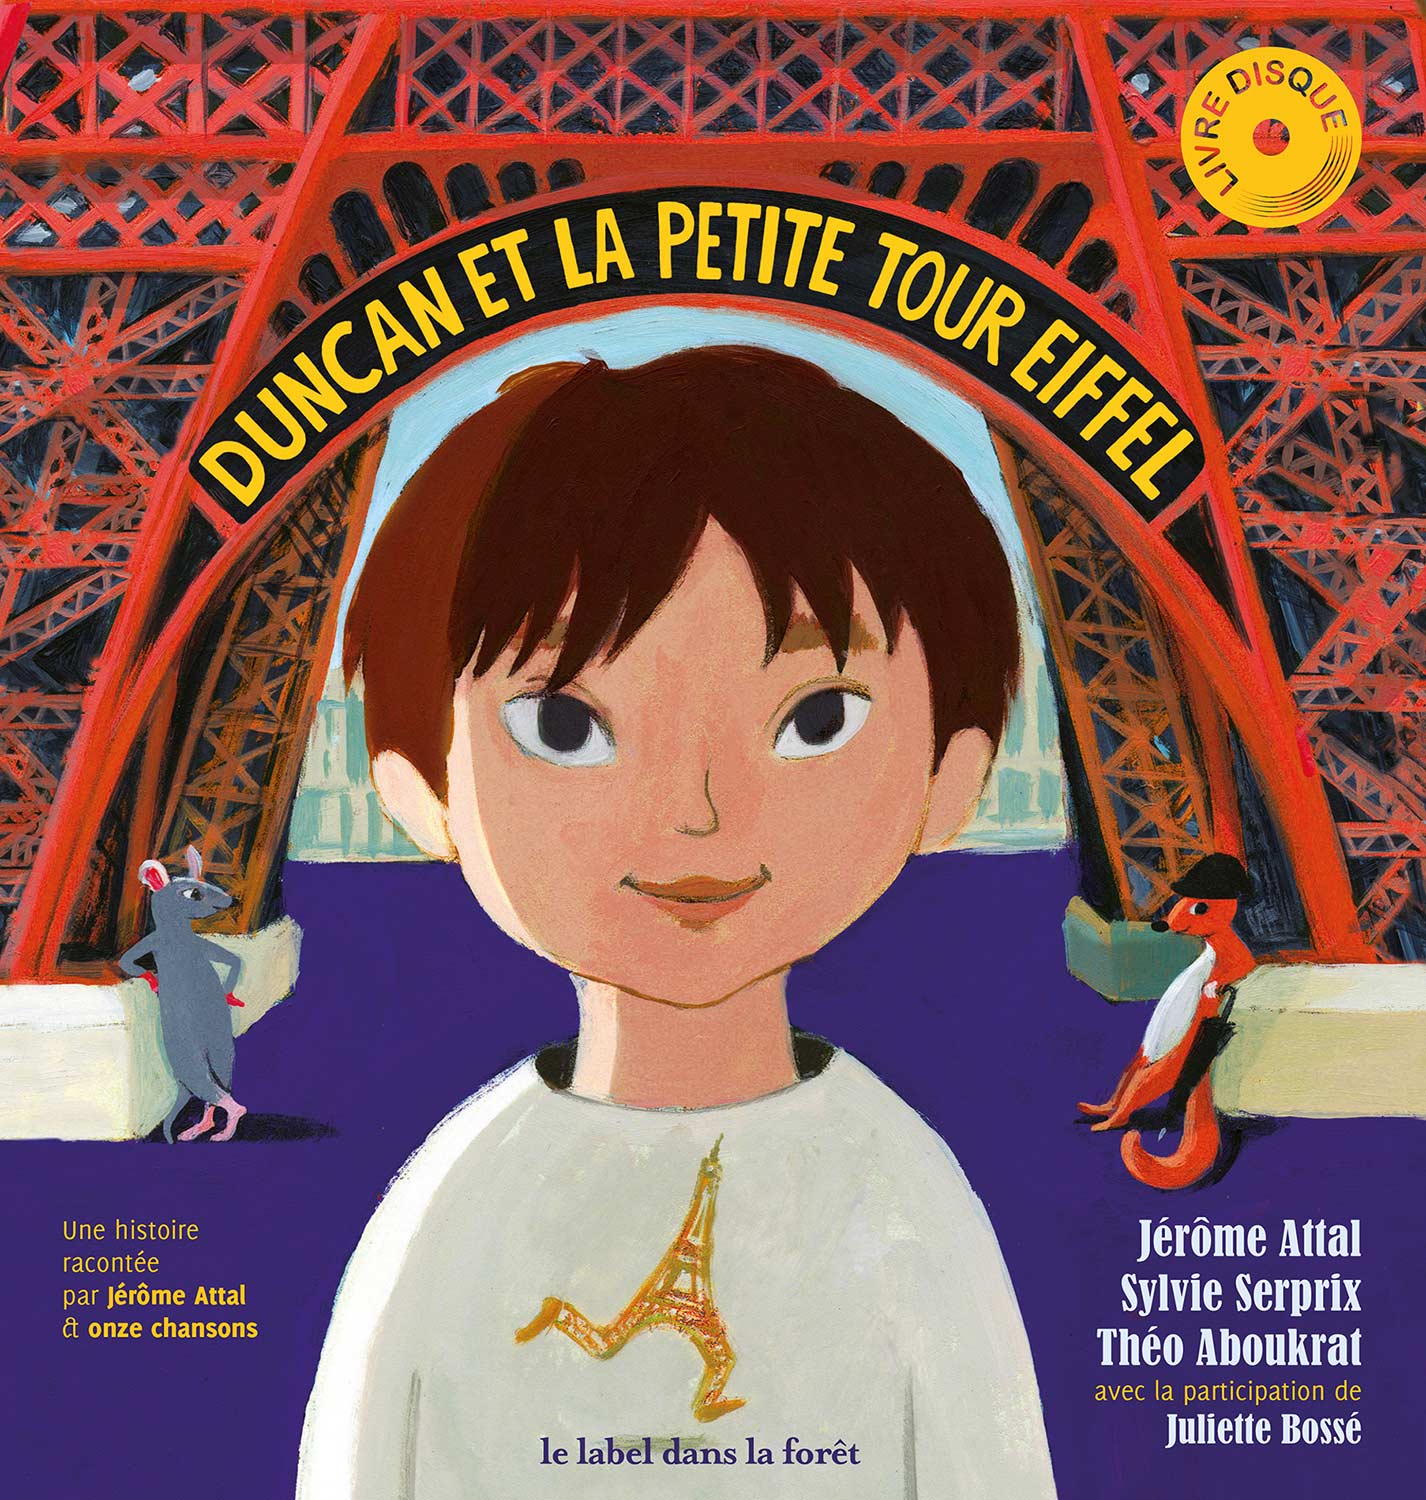 Duncan et la petite tour Eiffel